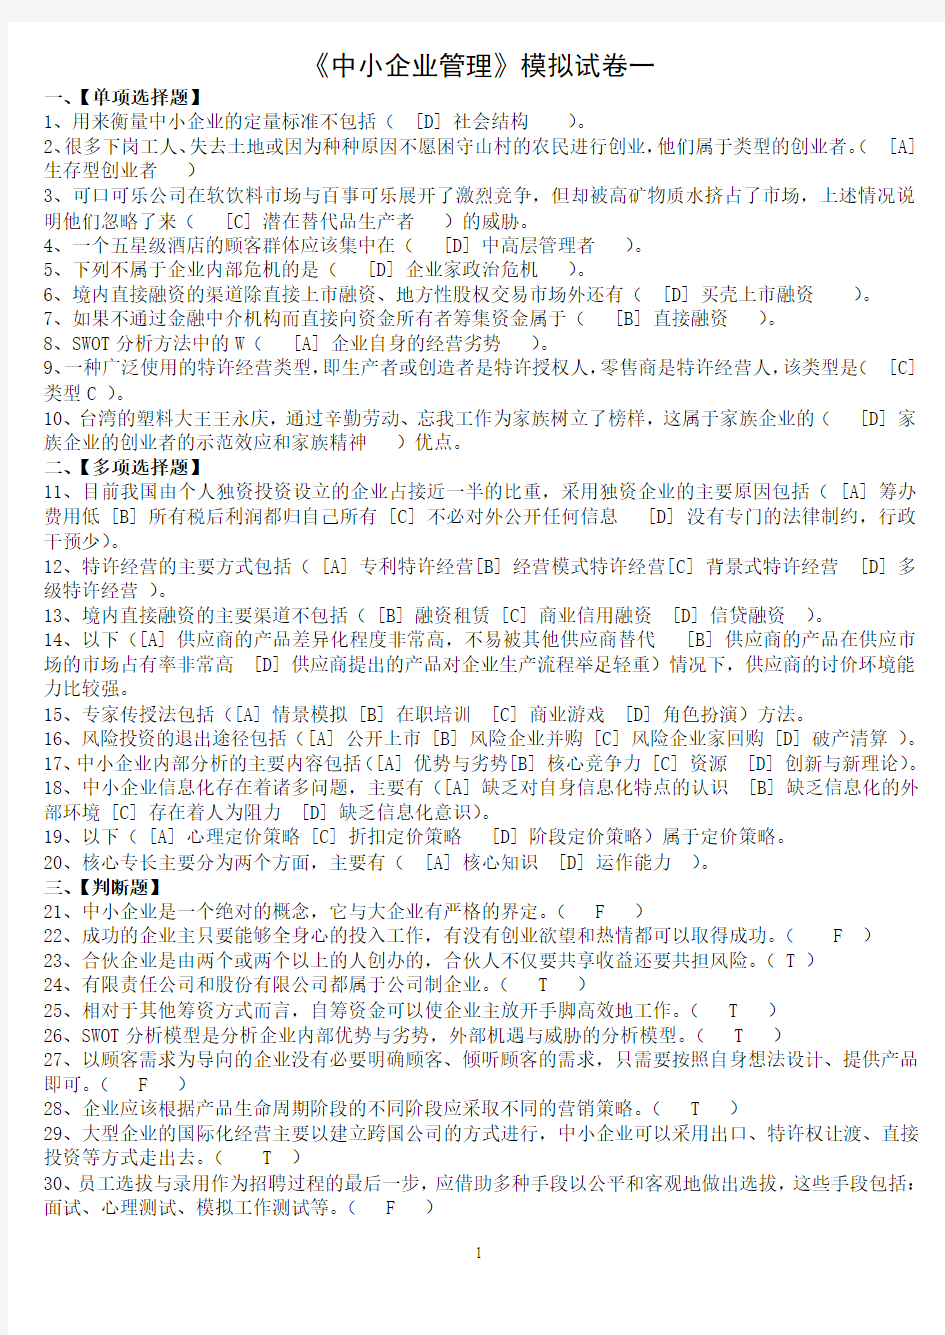 北京语言大学2013年3月期末考试《中小企业管理》模拟试卷答案